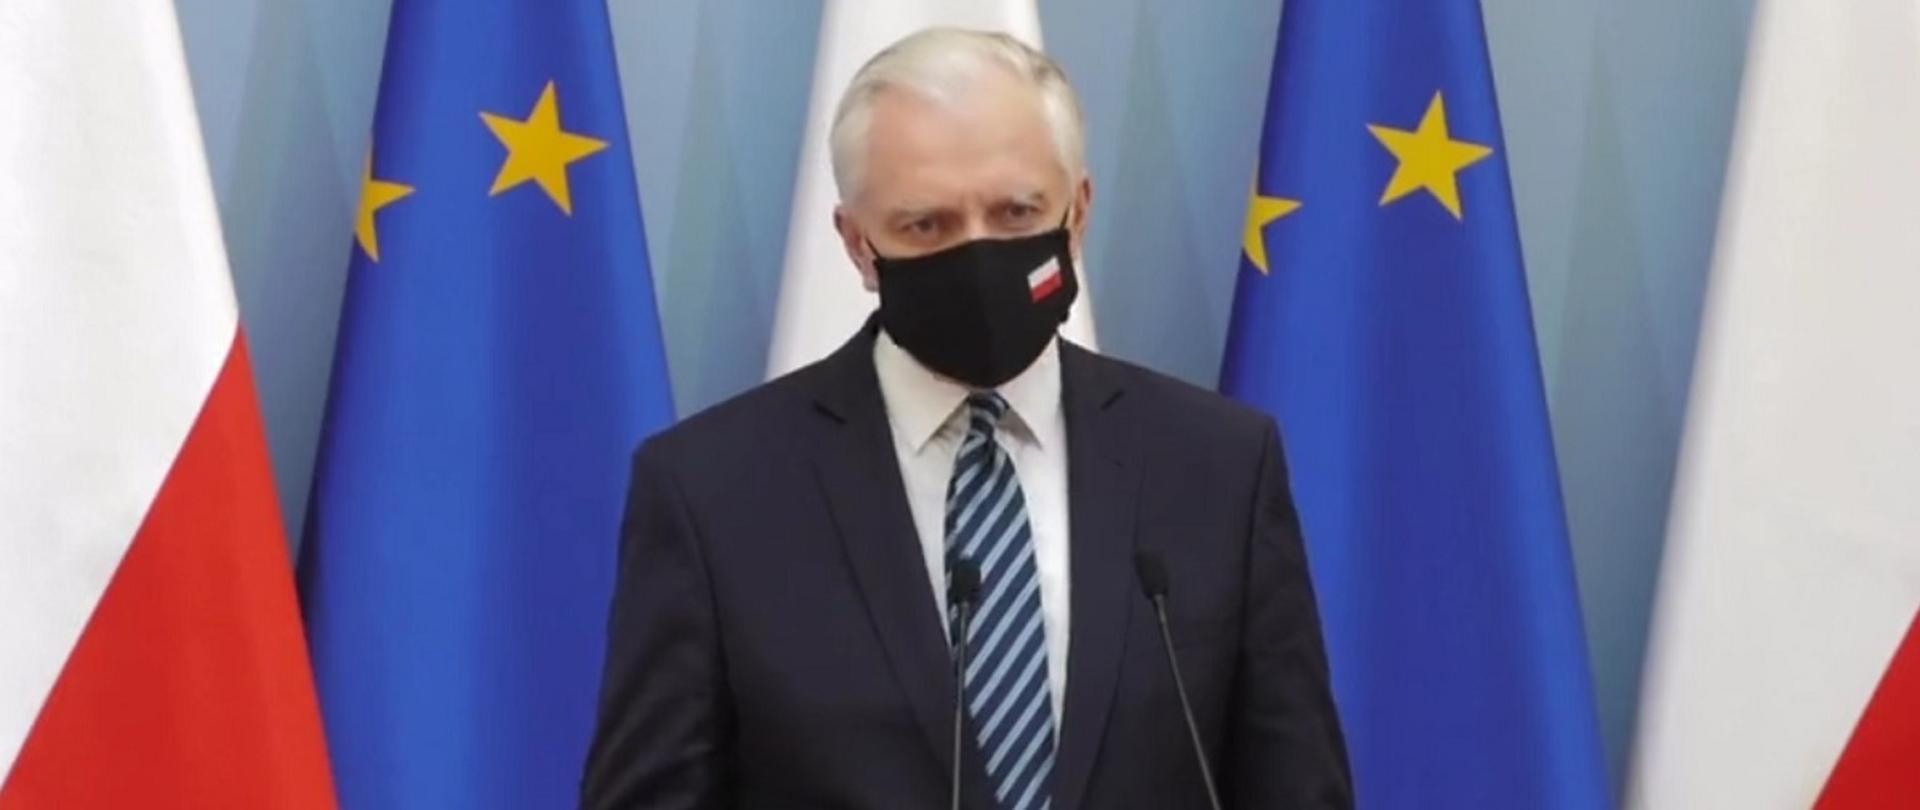 Wicepremier, minister rozwoju, pracy i technologii Jarosław Gowin stojący przy mikrofonach, za jego plecami flagi Polski i UE